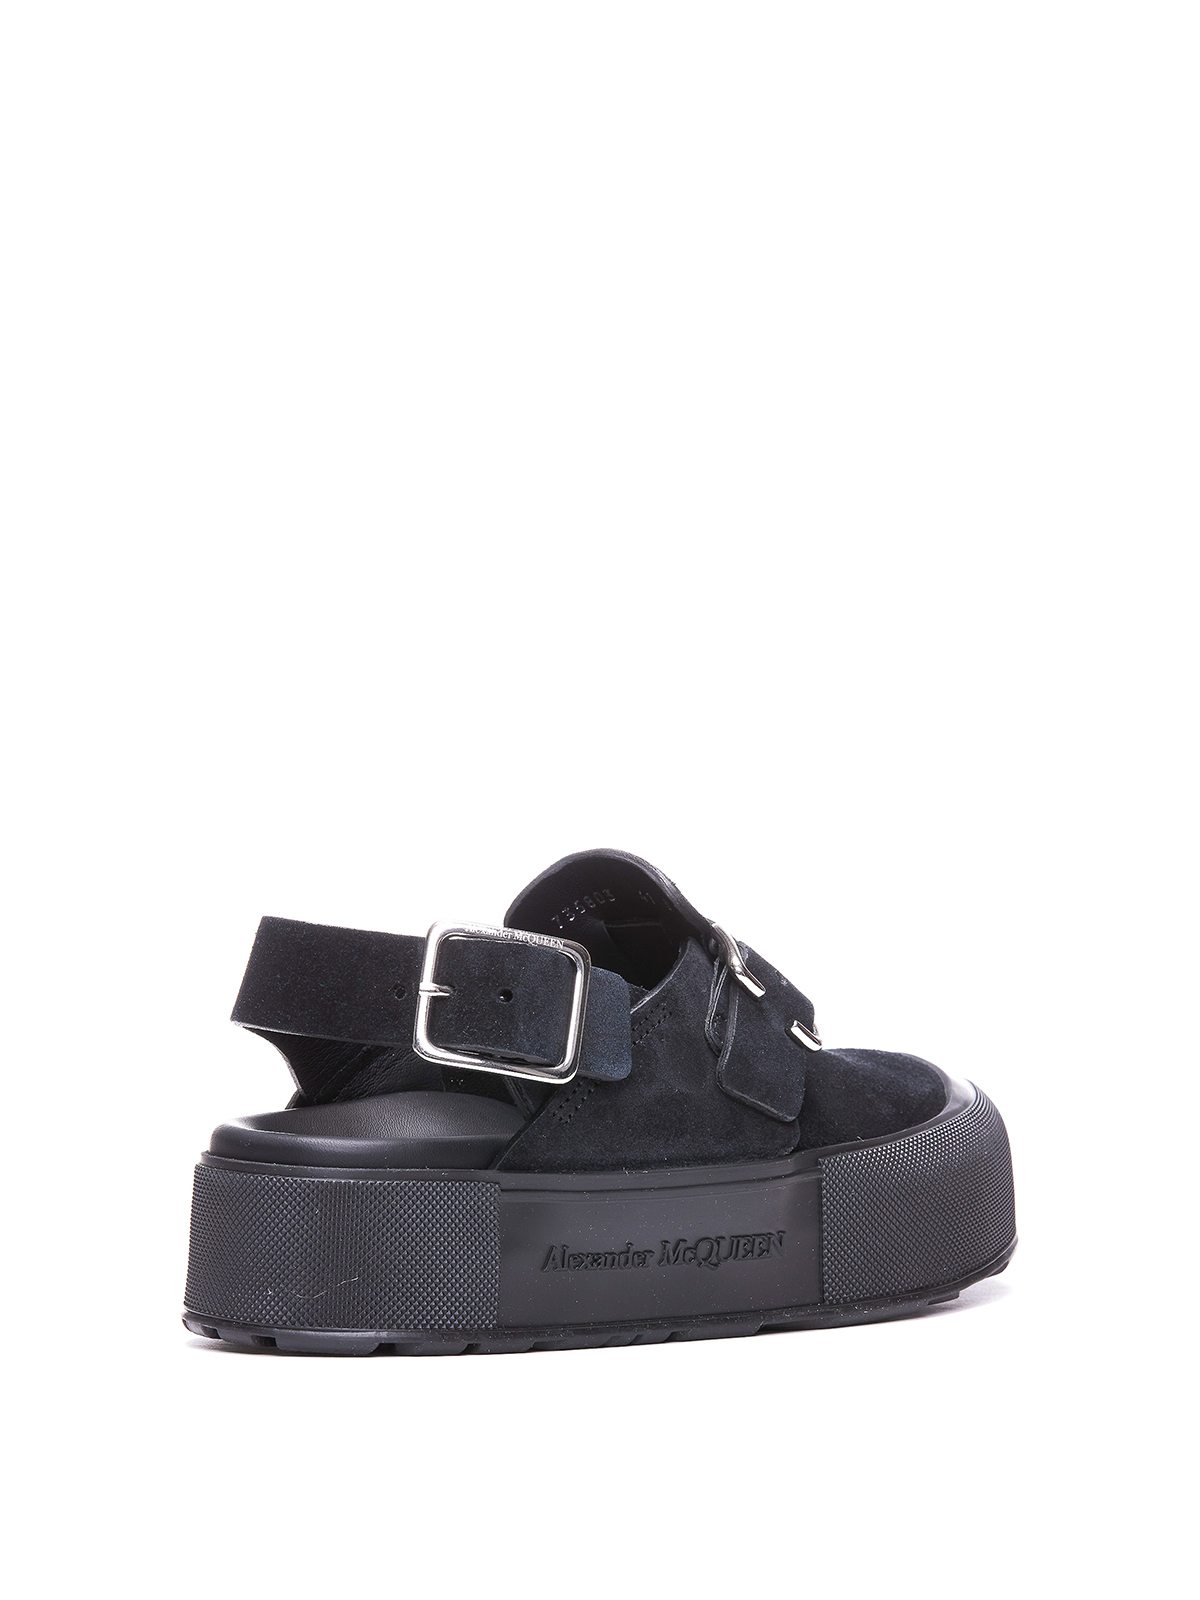 Shop Alexander Mcqueen Slick Black Suede Sandals